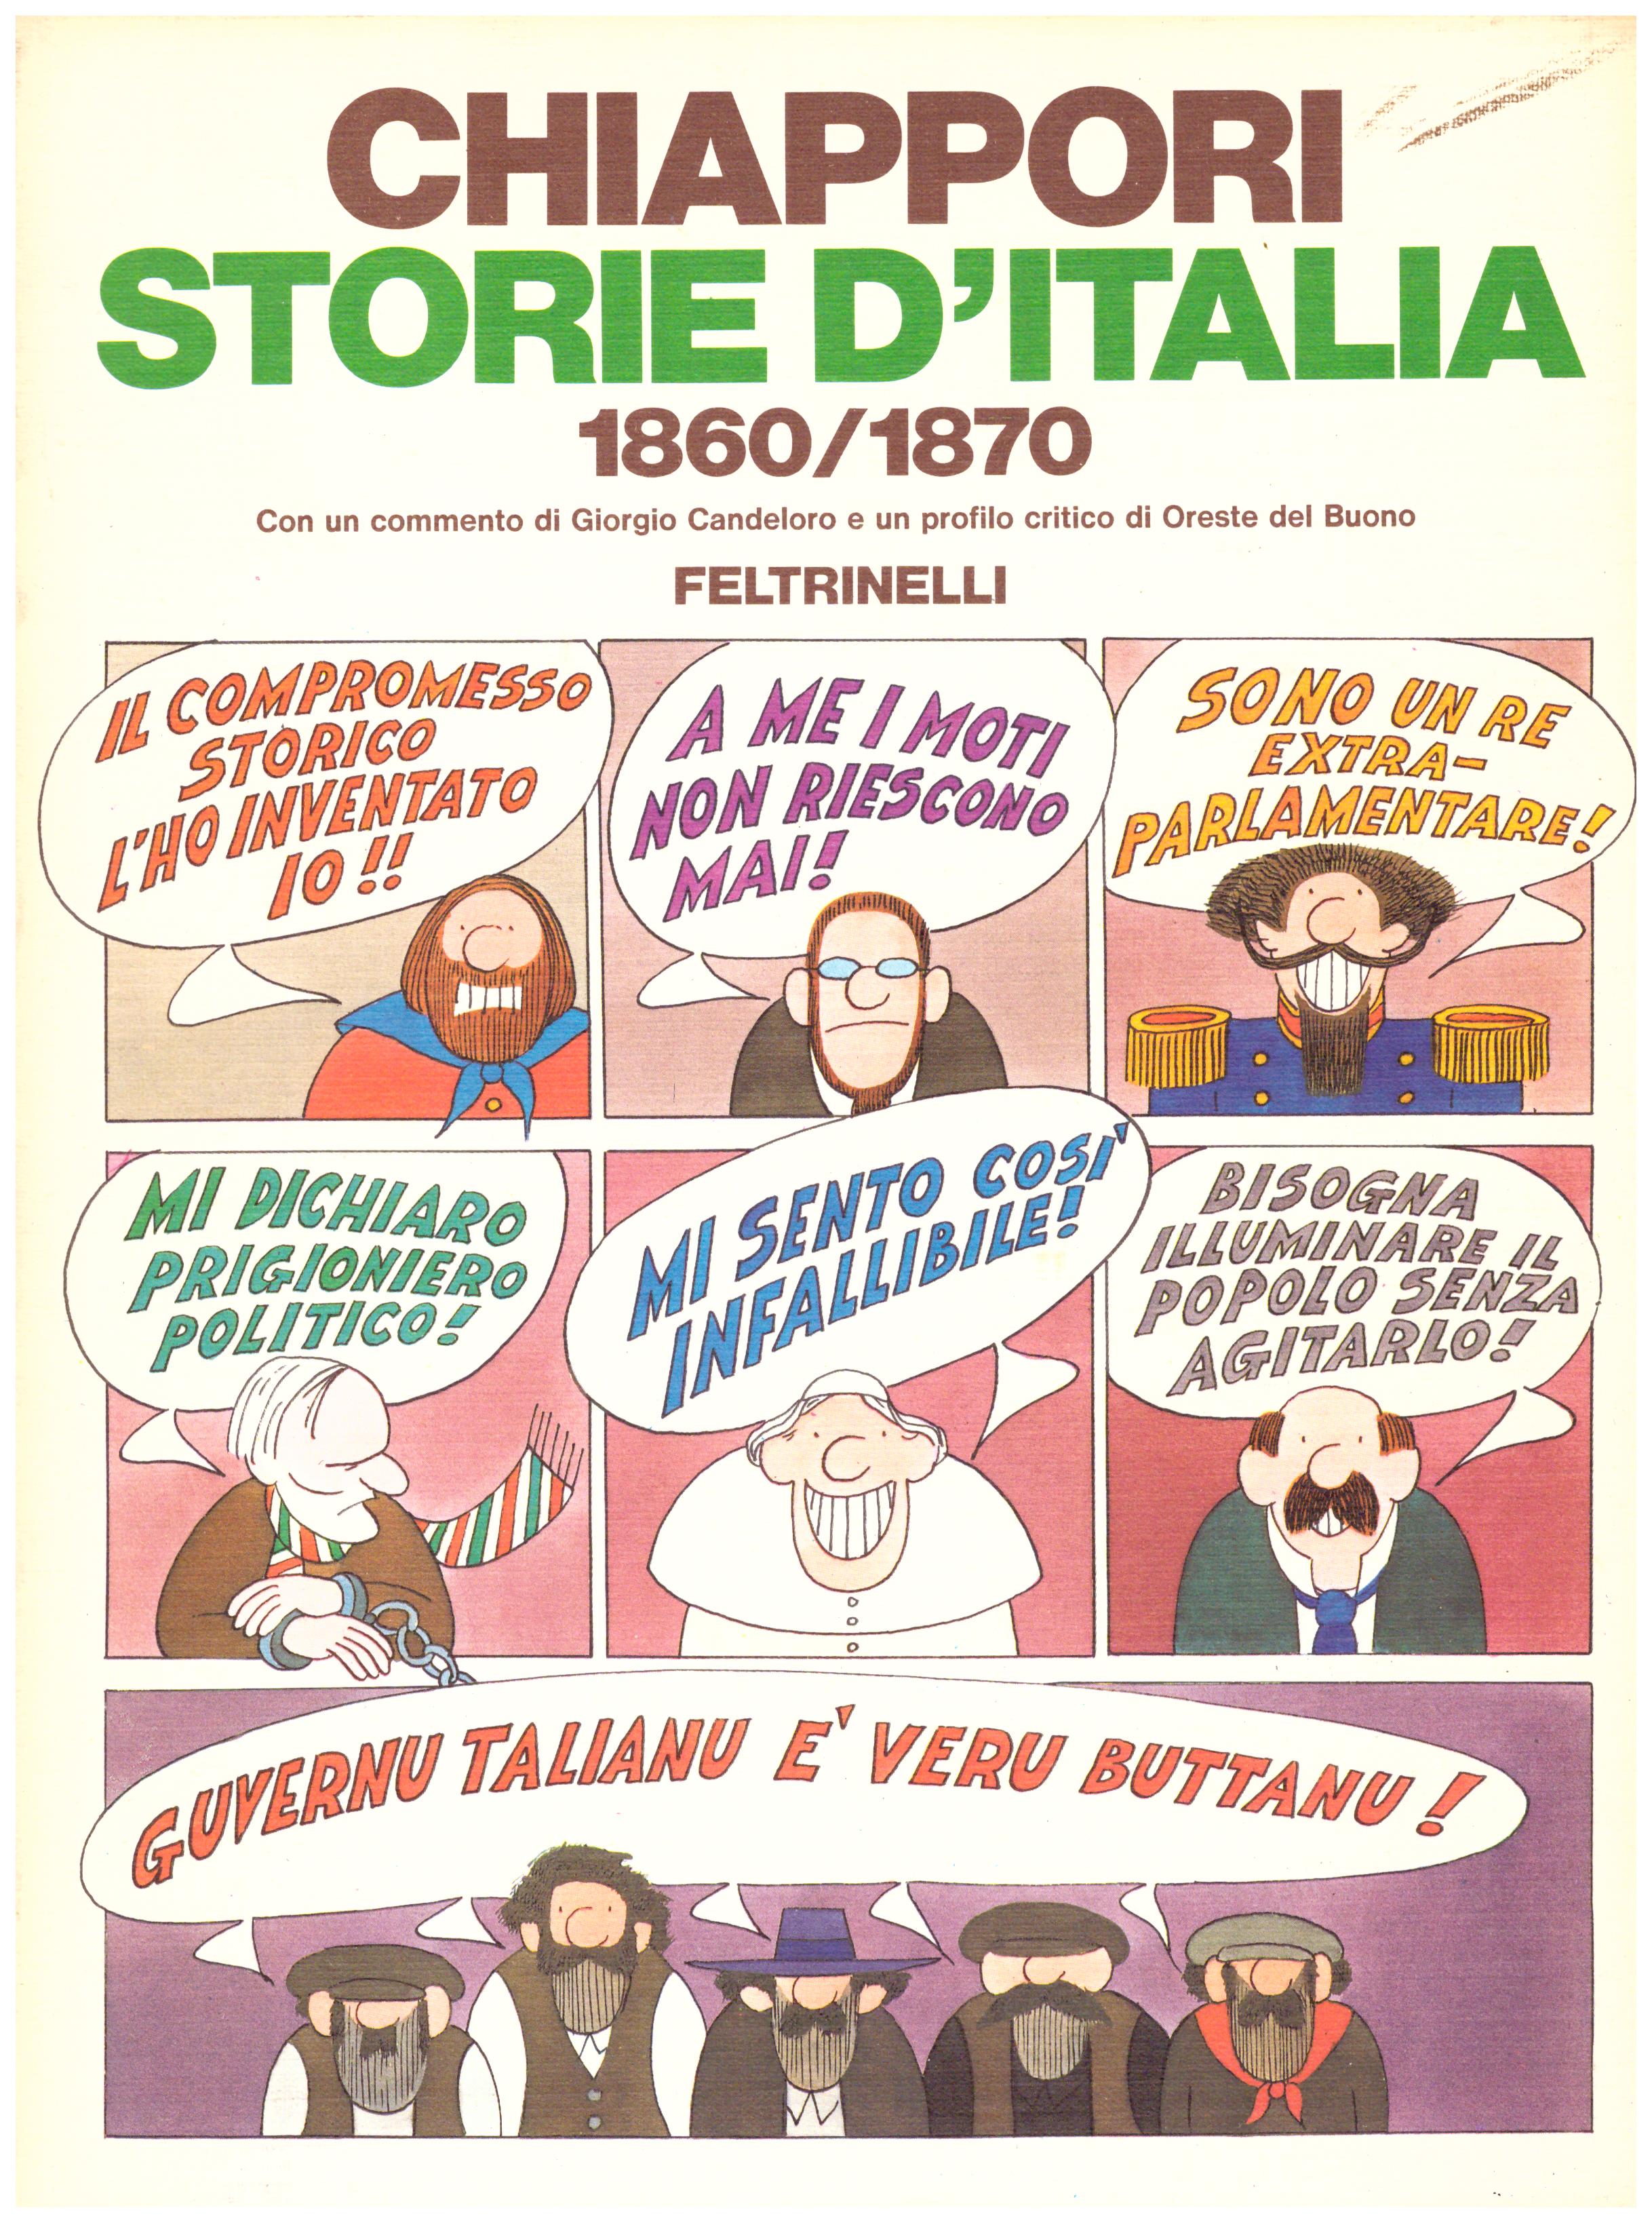 Titolo: Storie d'Italia 1860-1870 Autore: Alfredo Chiappori Editore: Feltrinelli 1978